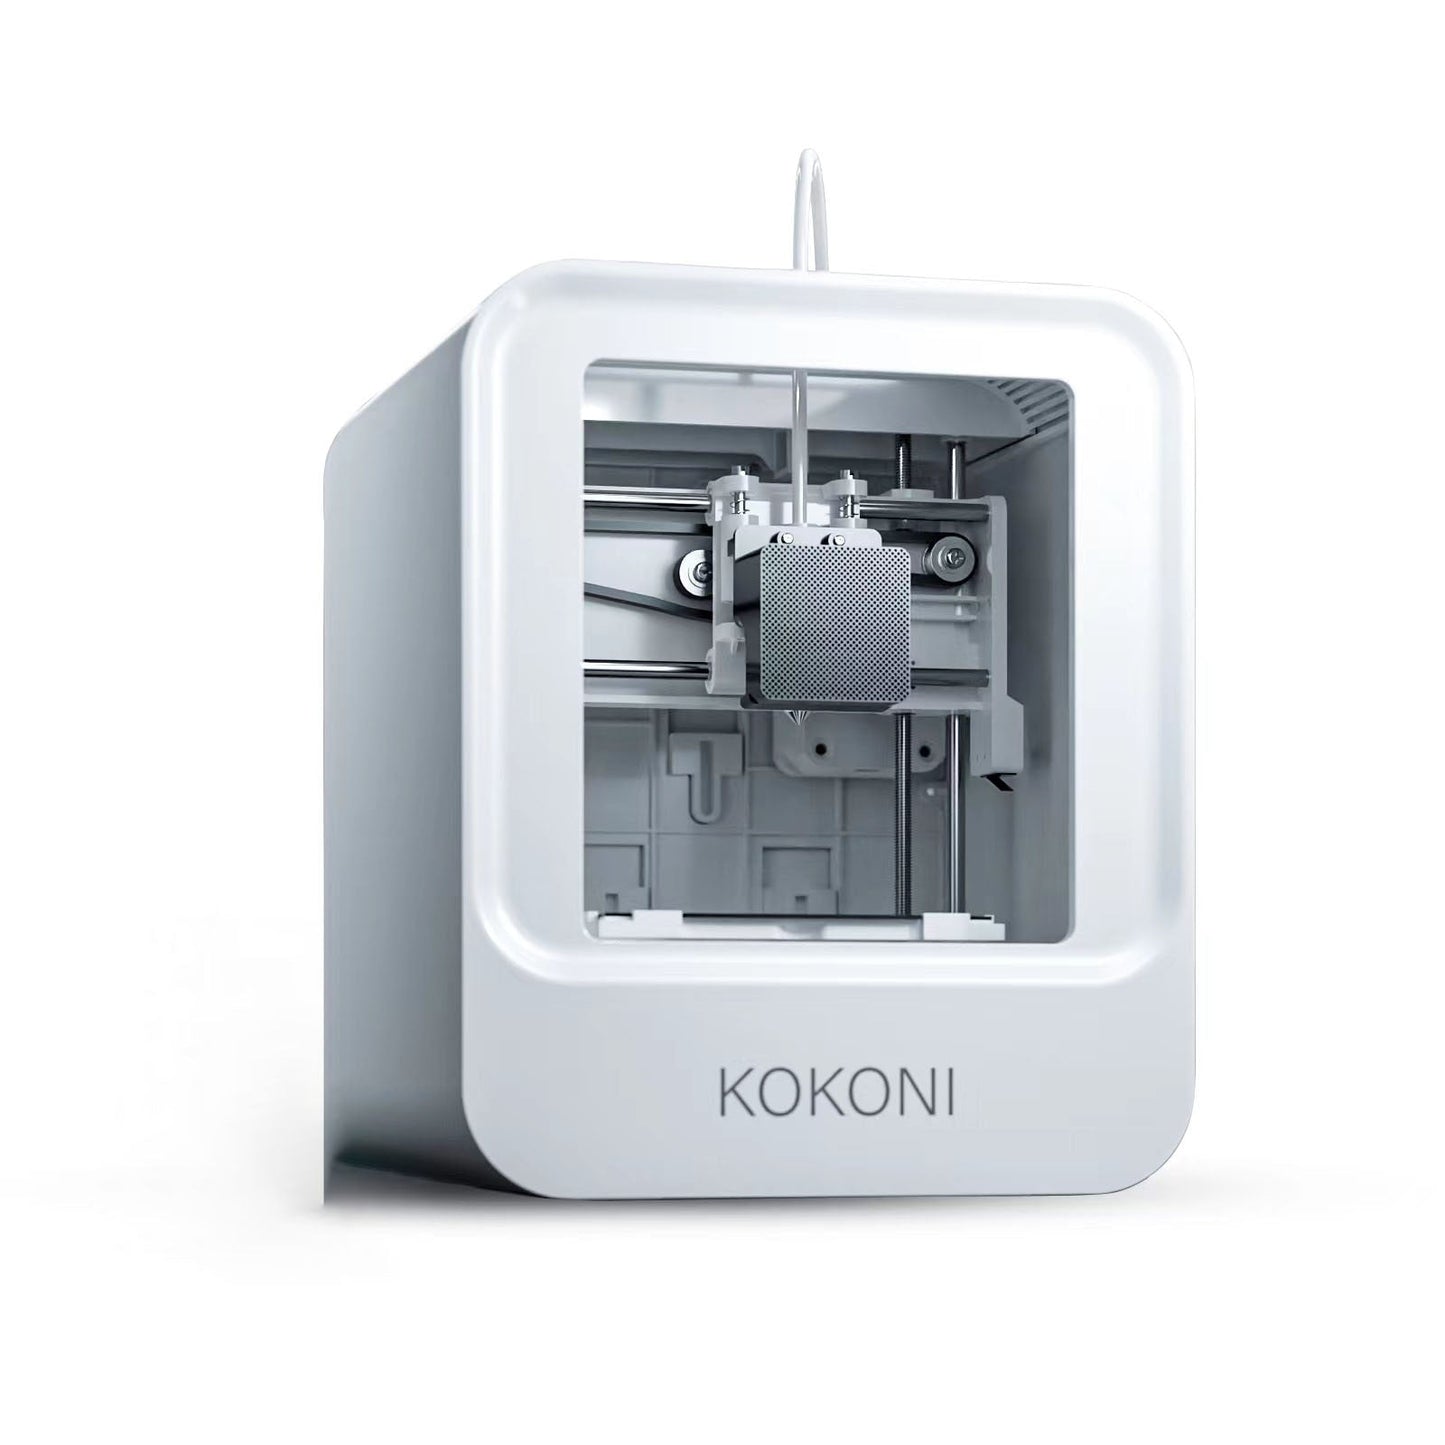 KOKONI 3D Printer Mini Home عالية الدقة الصناعية على مستوى سطح المكتب طابعة ثلاثية الأبعاد تطبيق ذكي للتحكم في الصورة